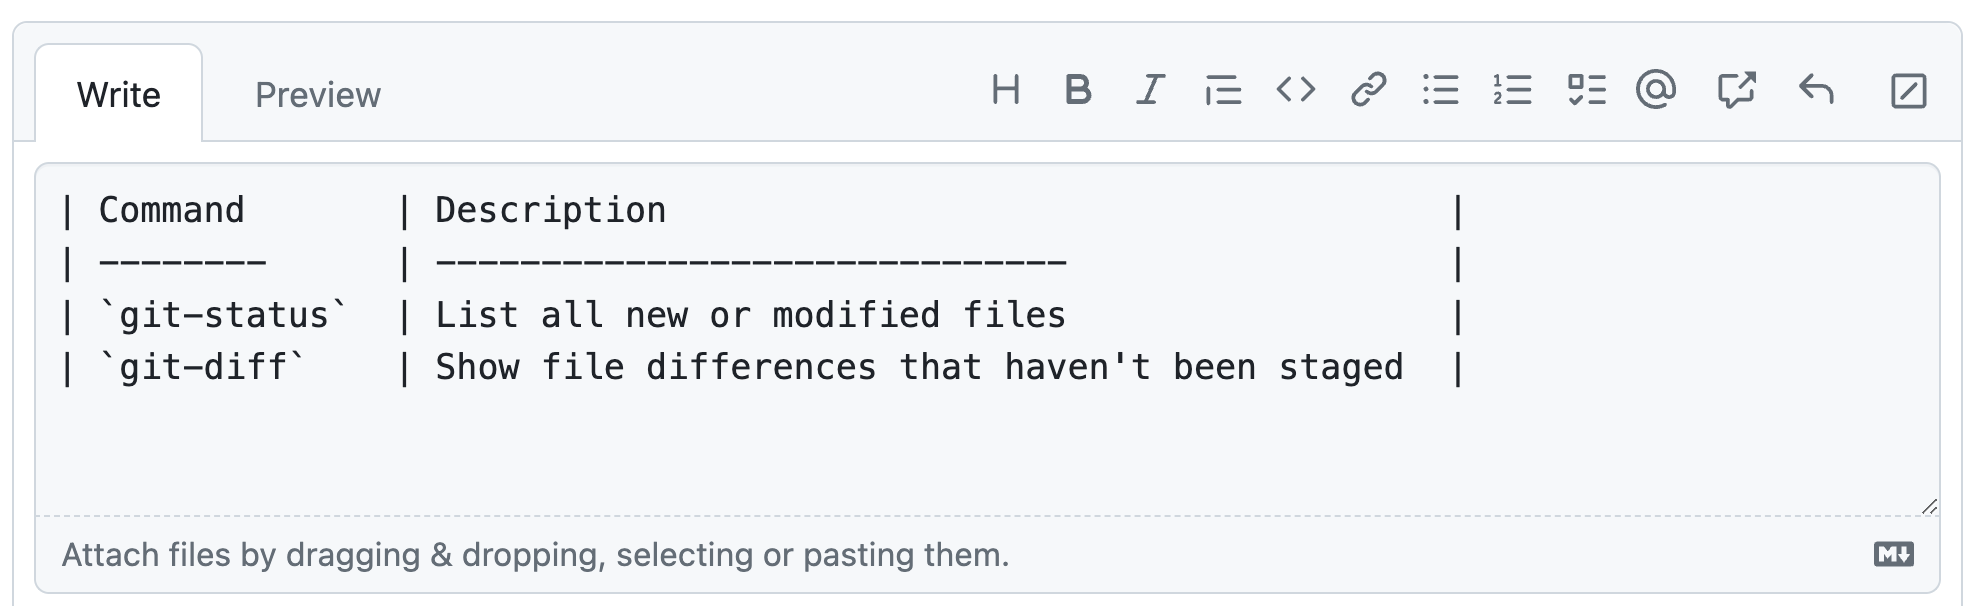 显示启用了固定宽度字体的 GitHub 注释字段的屏幕截图